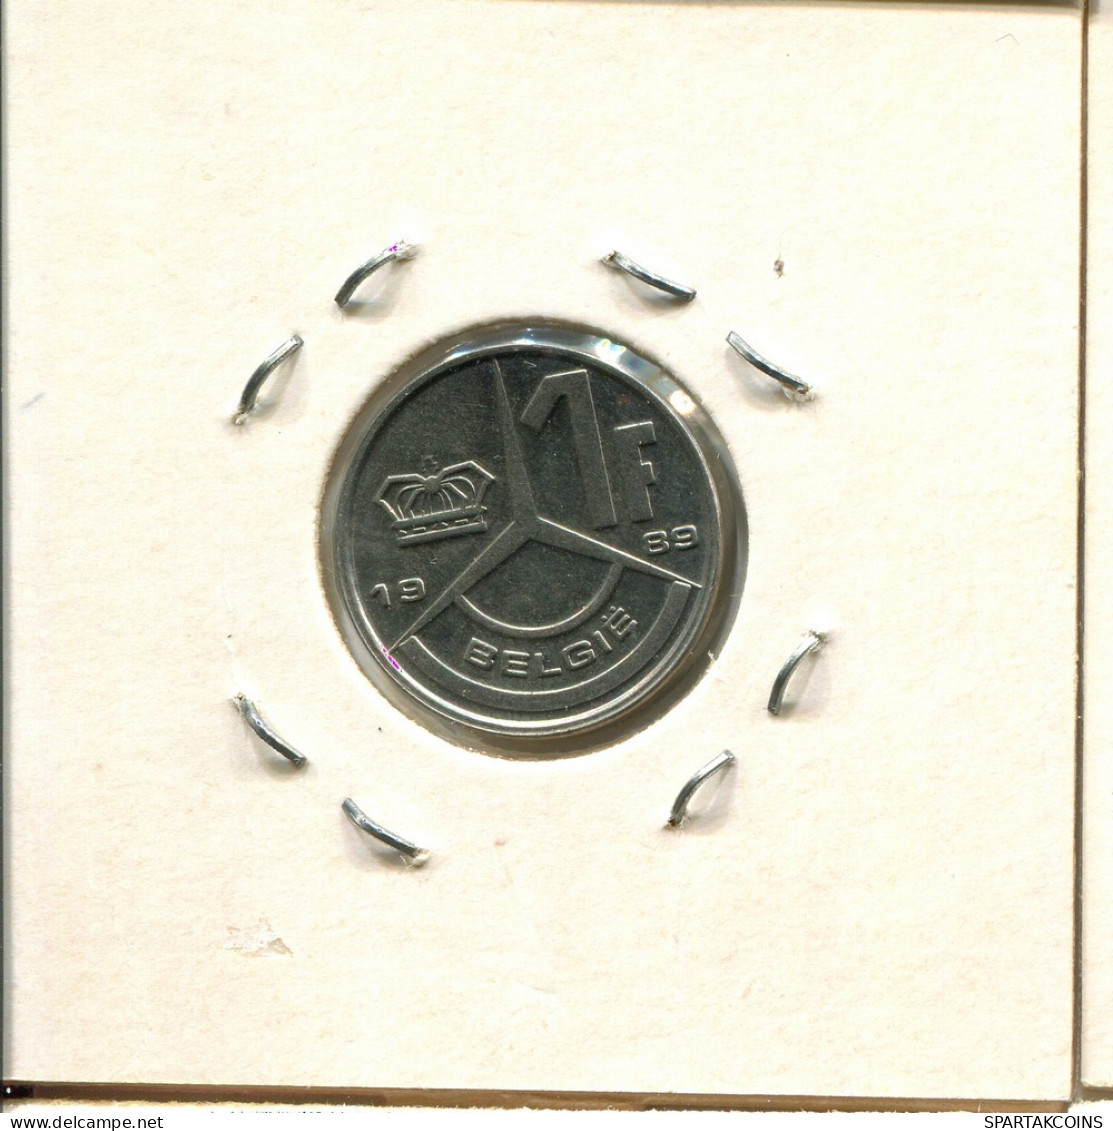 1 FRANC 1989 DUTCH Text BELGIUM Coin #BA547.U.A - 1 Franc